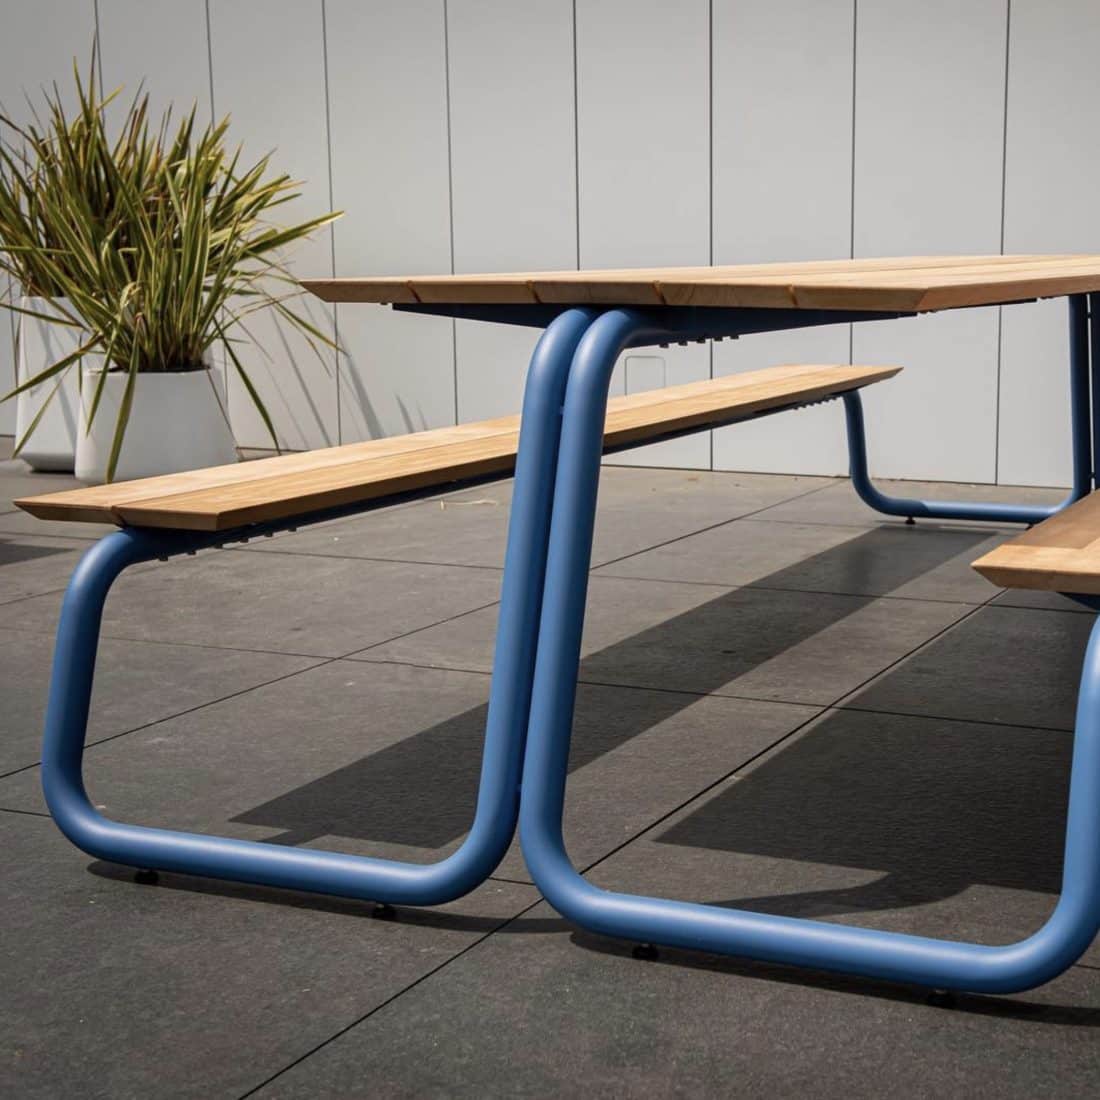 The Table van Wünder custom